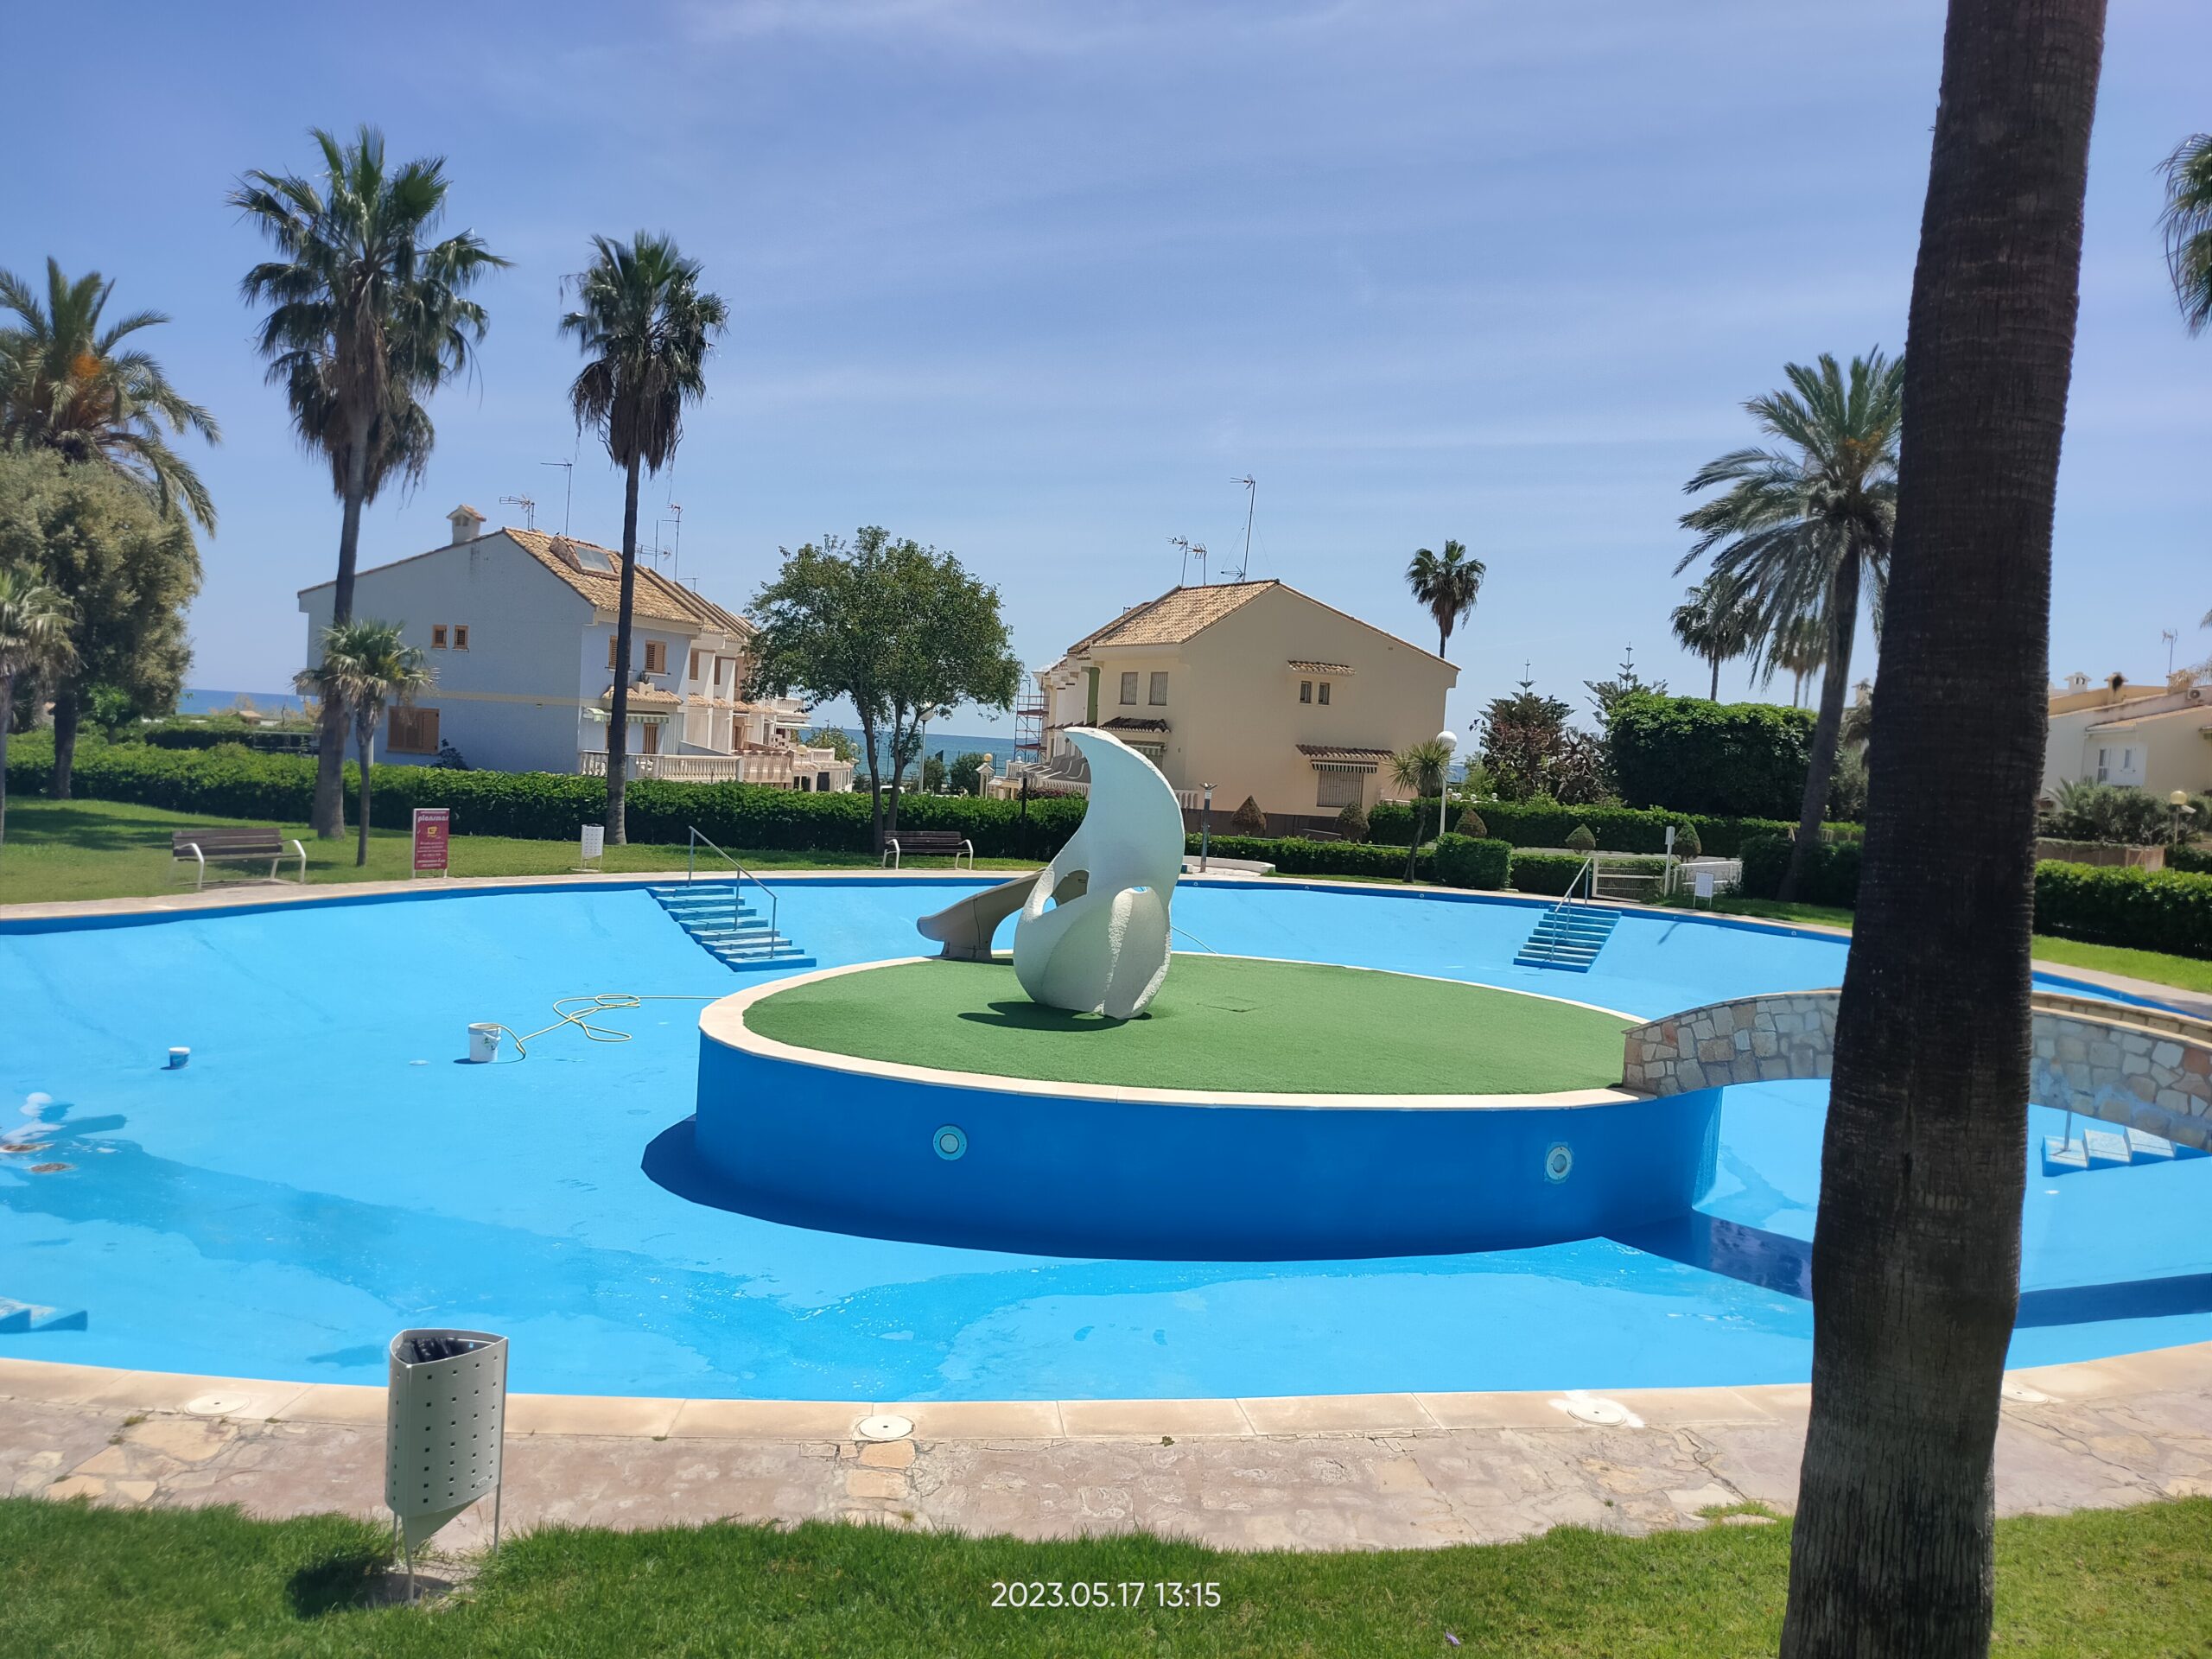 Renovación y mantenimiento de piscina comunitaria en valencia